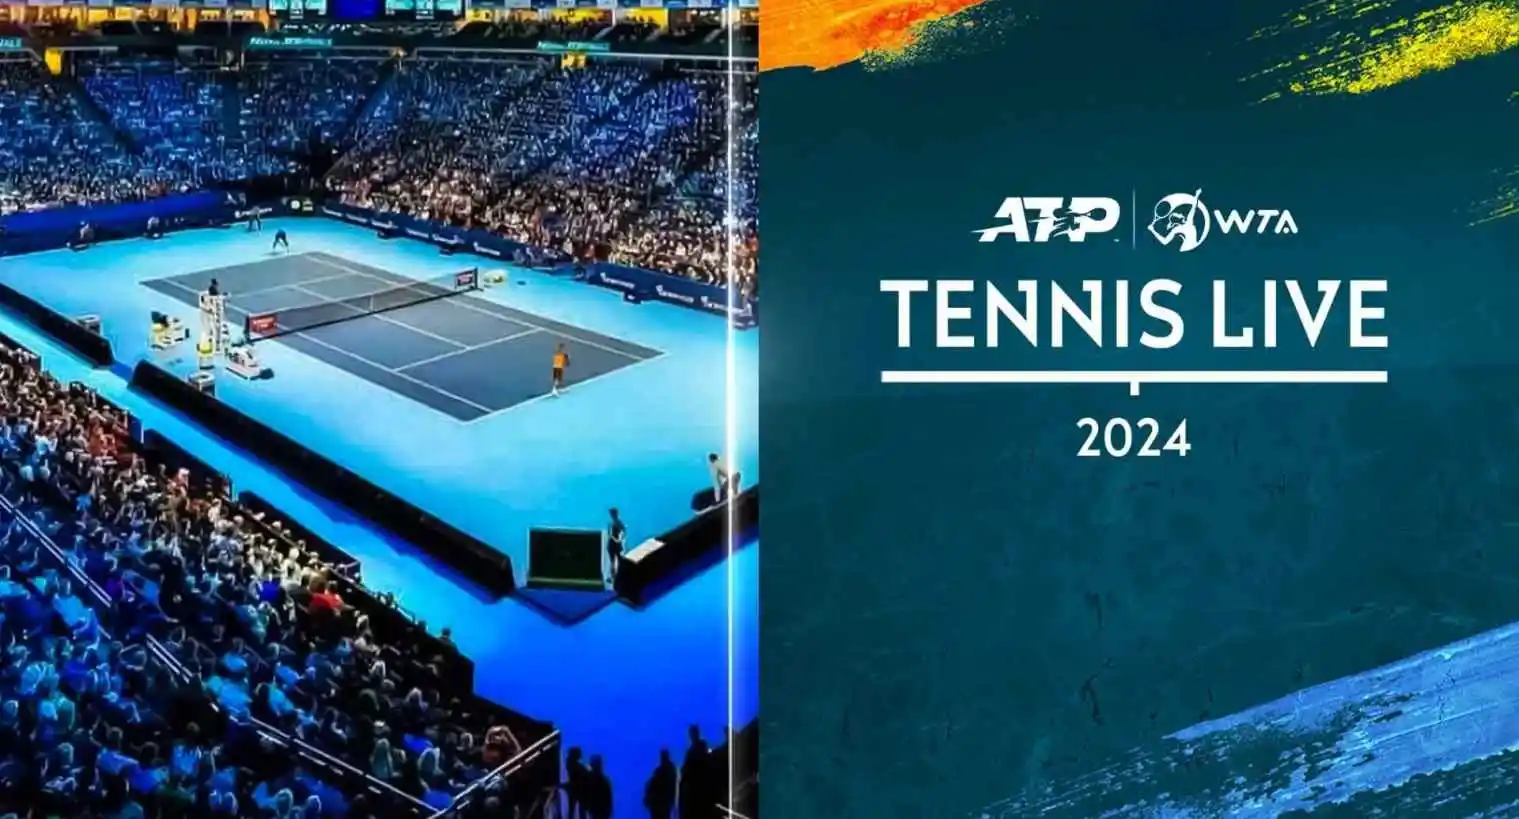 Nasce il nuovo Sky Sport Plus, un canale interattivo 🎾 dedicato agli amanti del Tennis